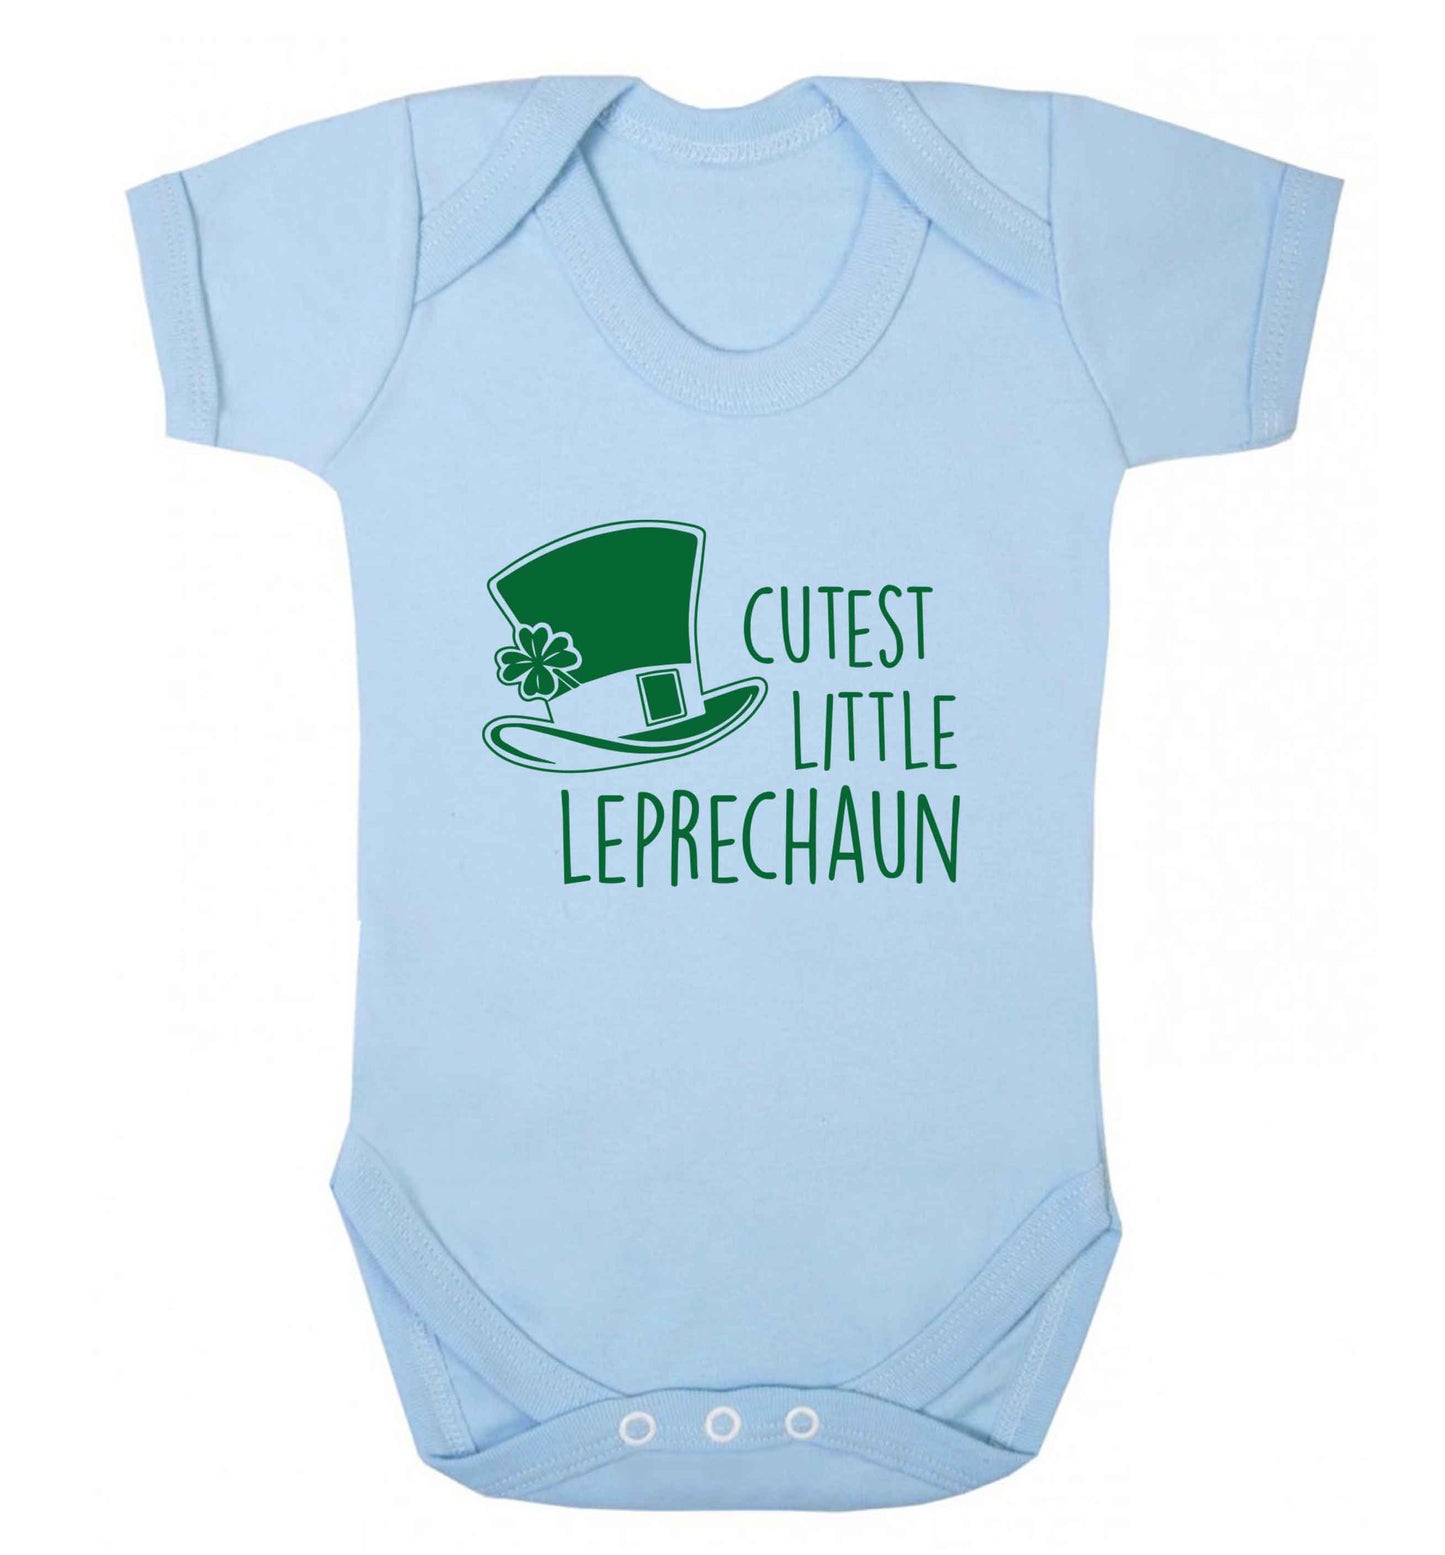 Cutest little leprechaun baby vest pale blue 18-24 months